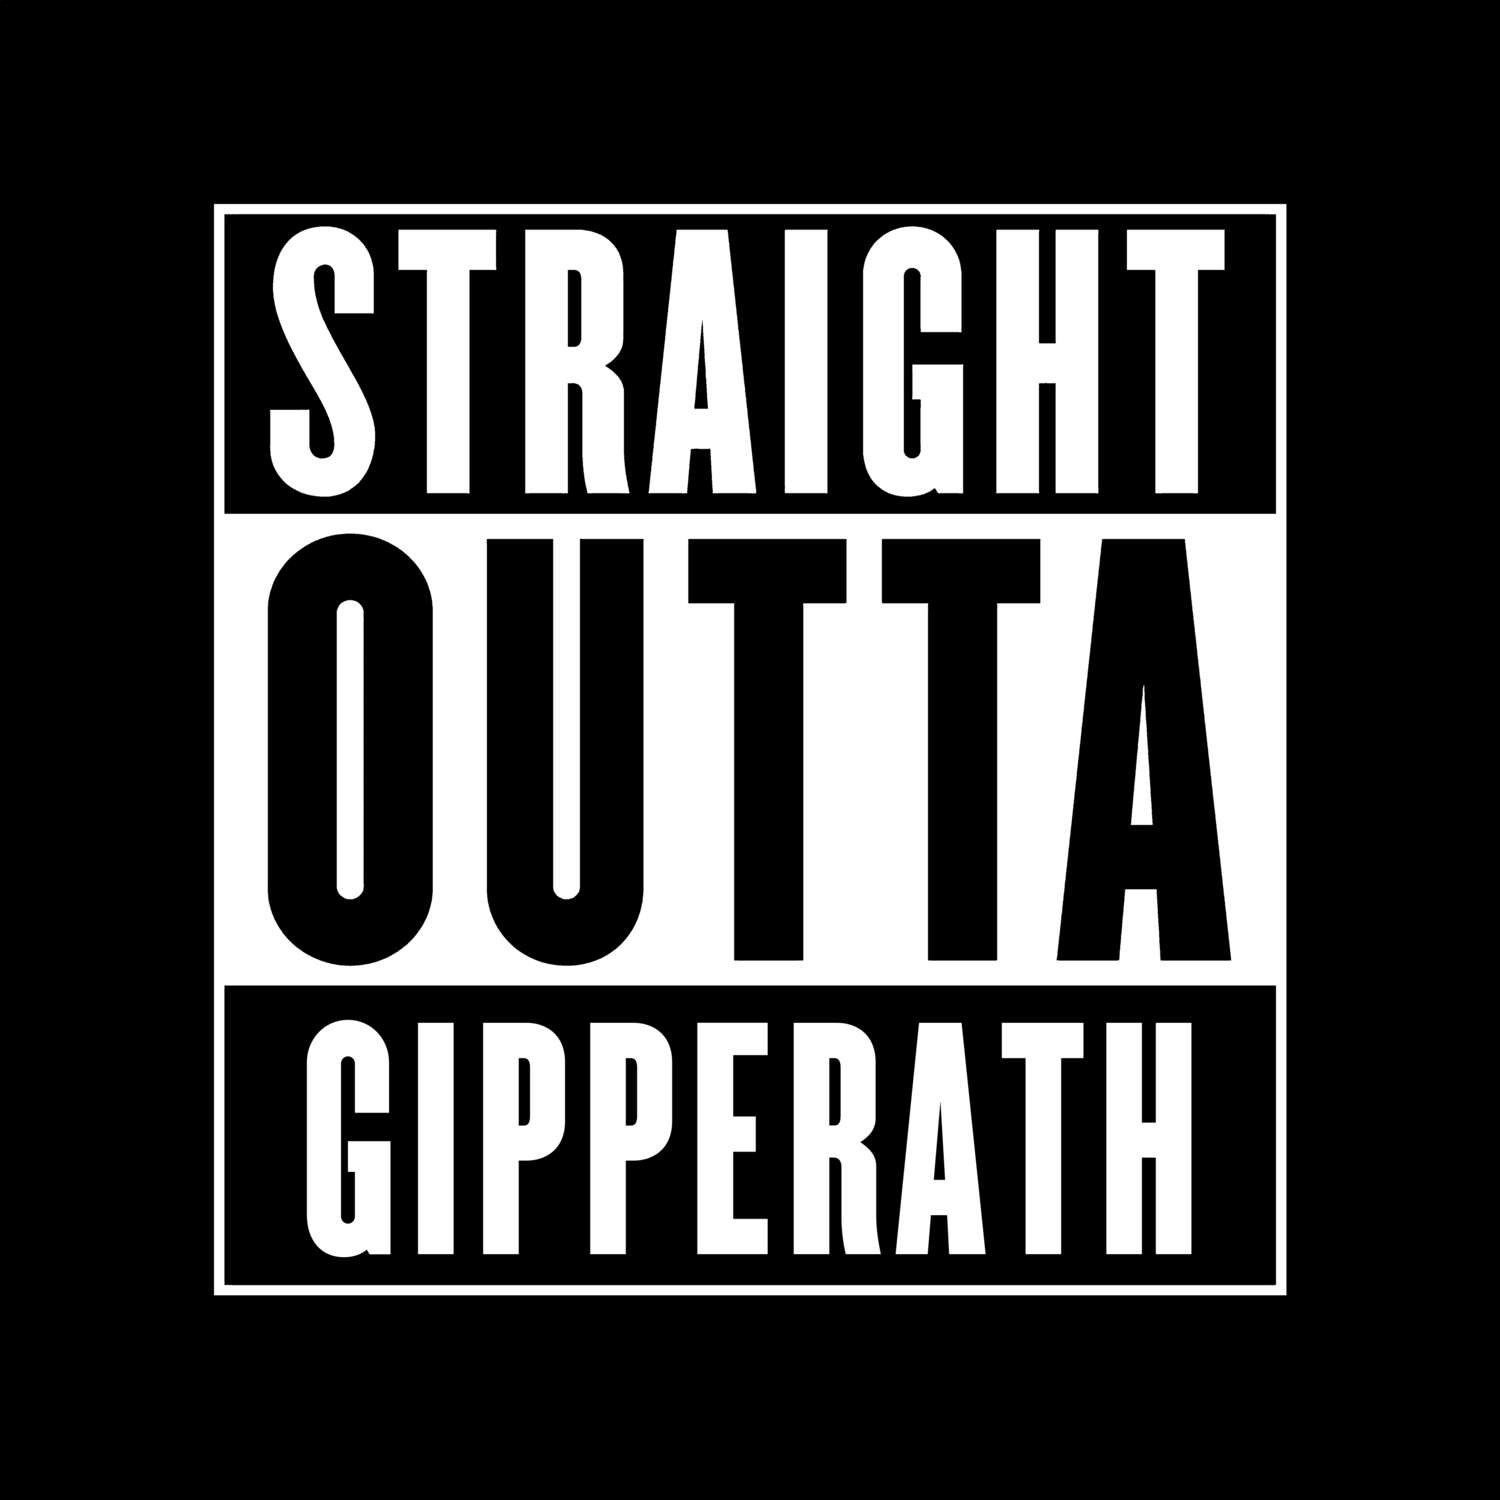 Gipperath T-Shirt »Straight Outta«